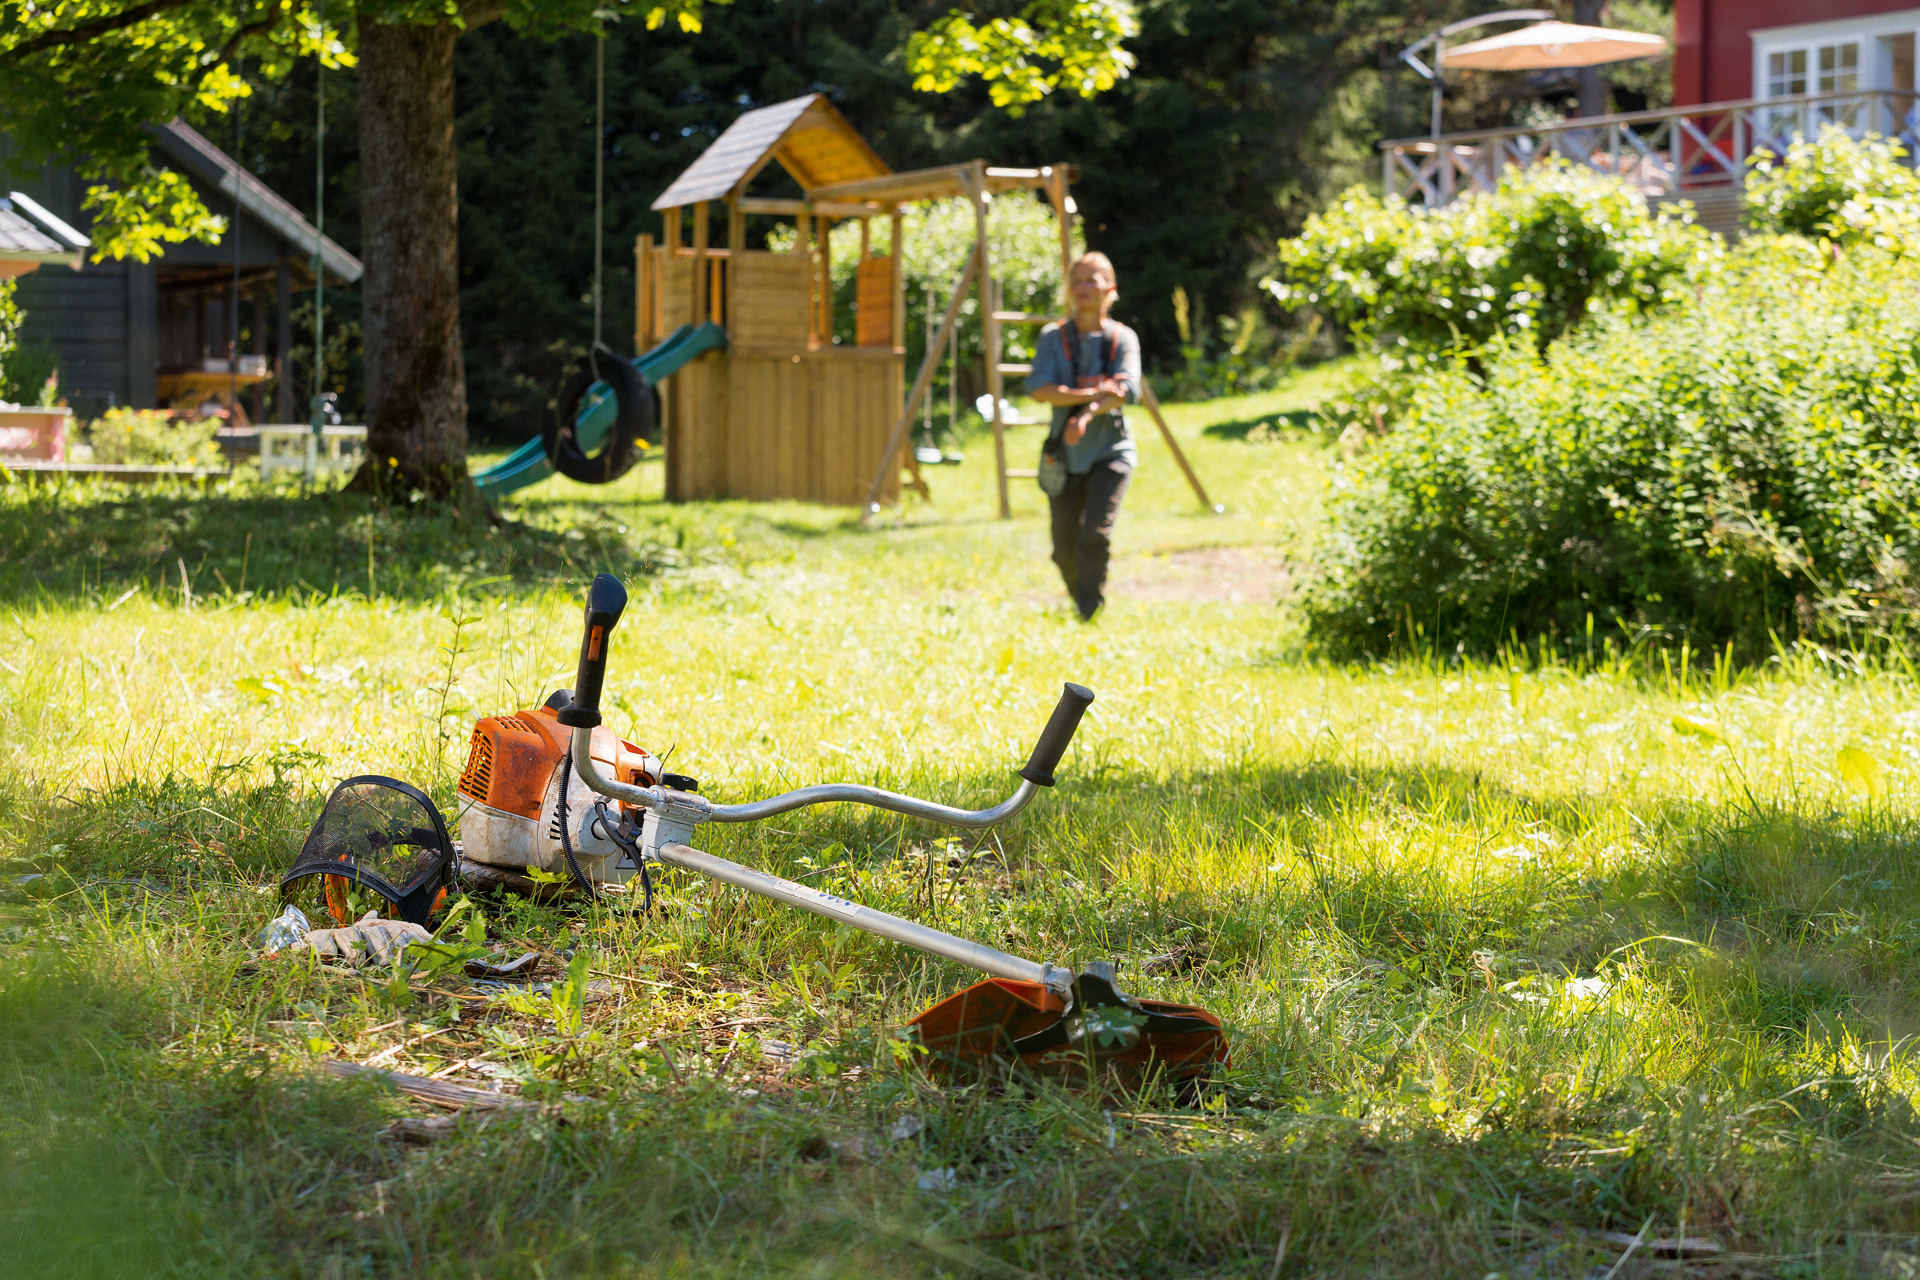 Débroussailleuse STIHL FS 240 au sol dans un jardin, avec des jeux pour enfant et un homme s’approchant de l’outil au loin